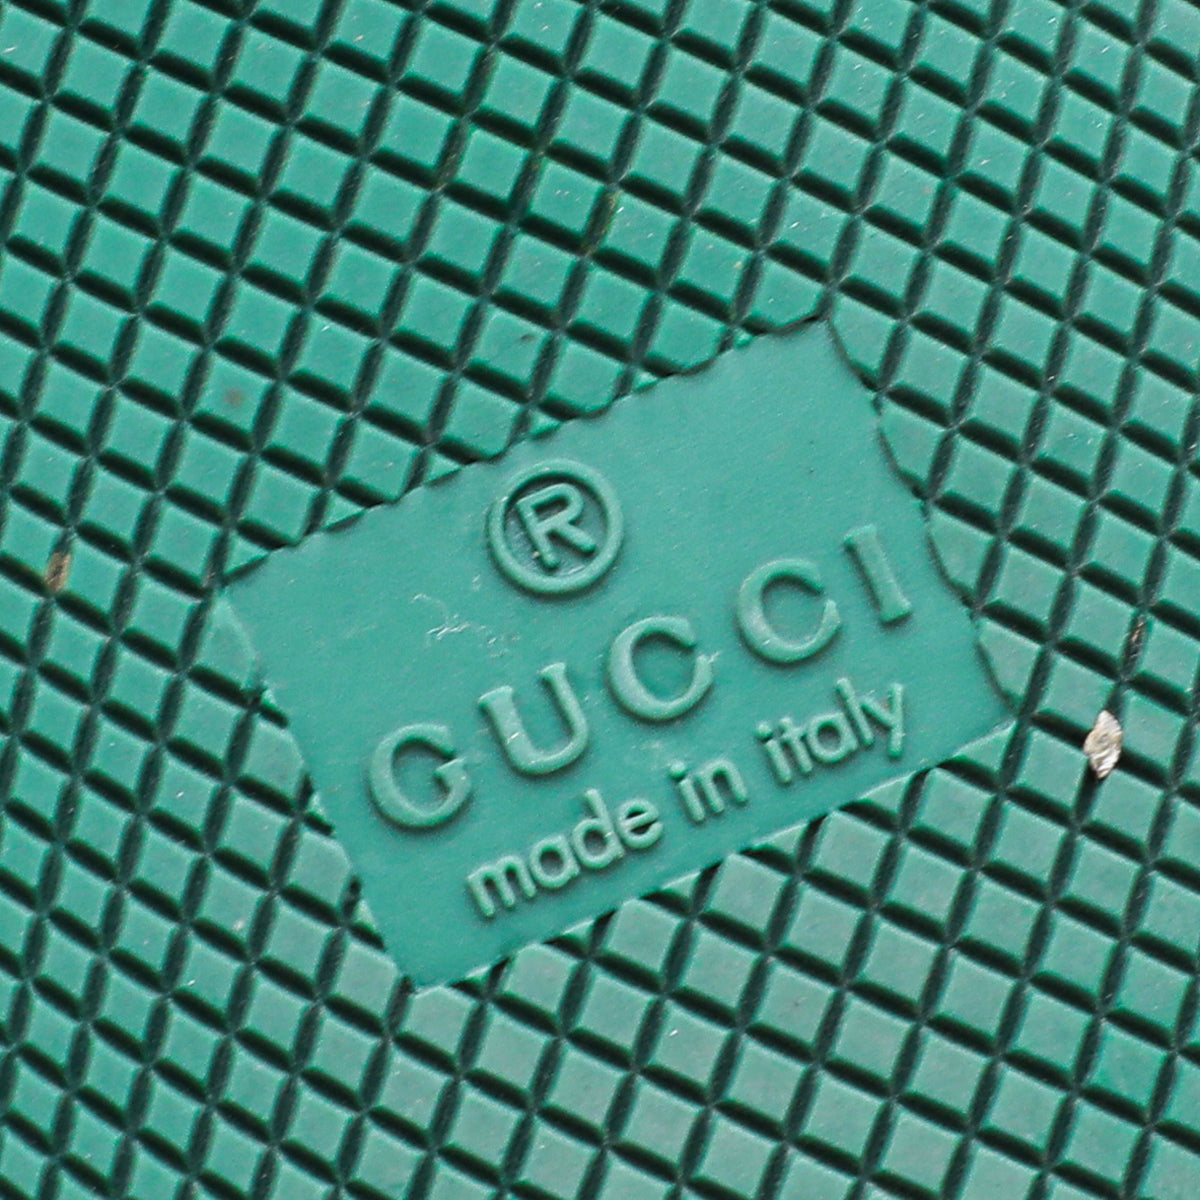 Gucci Tricolor Men's Screener GG Sneaker 9.5